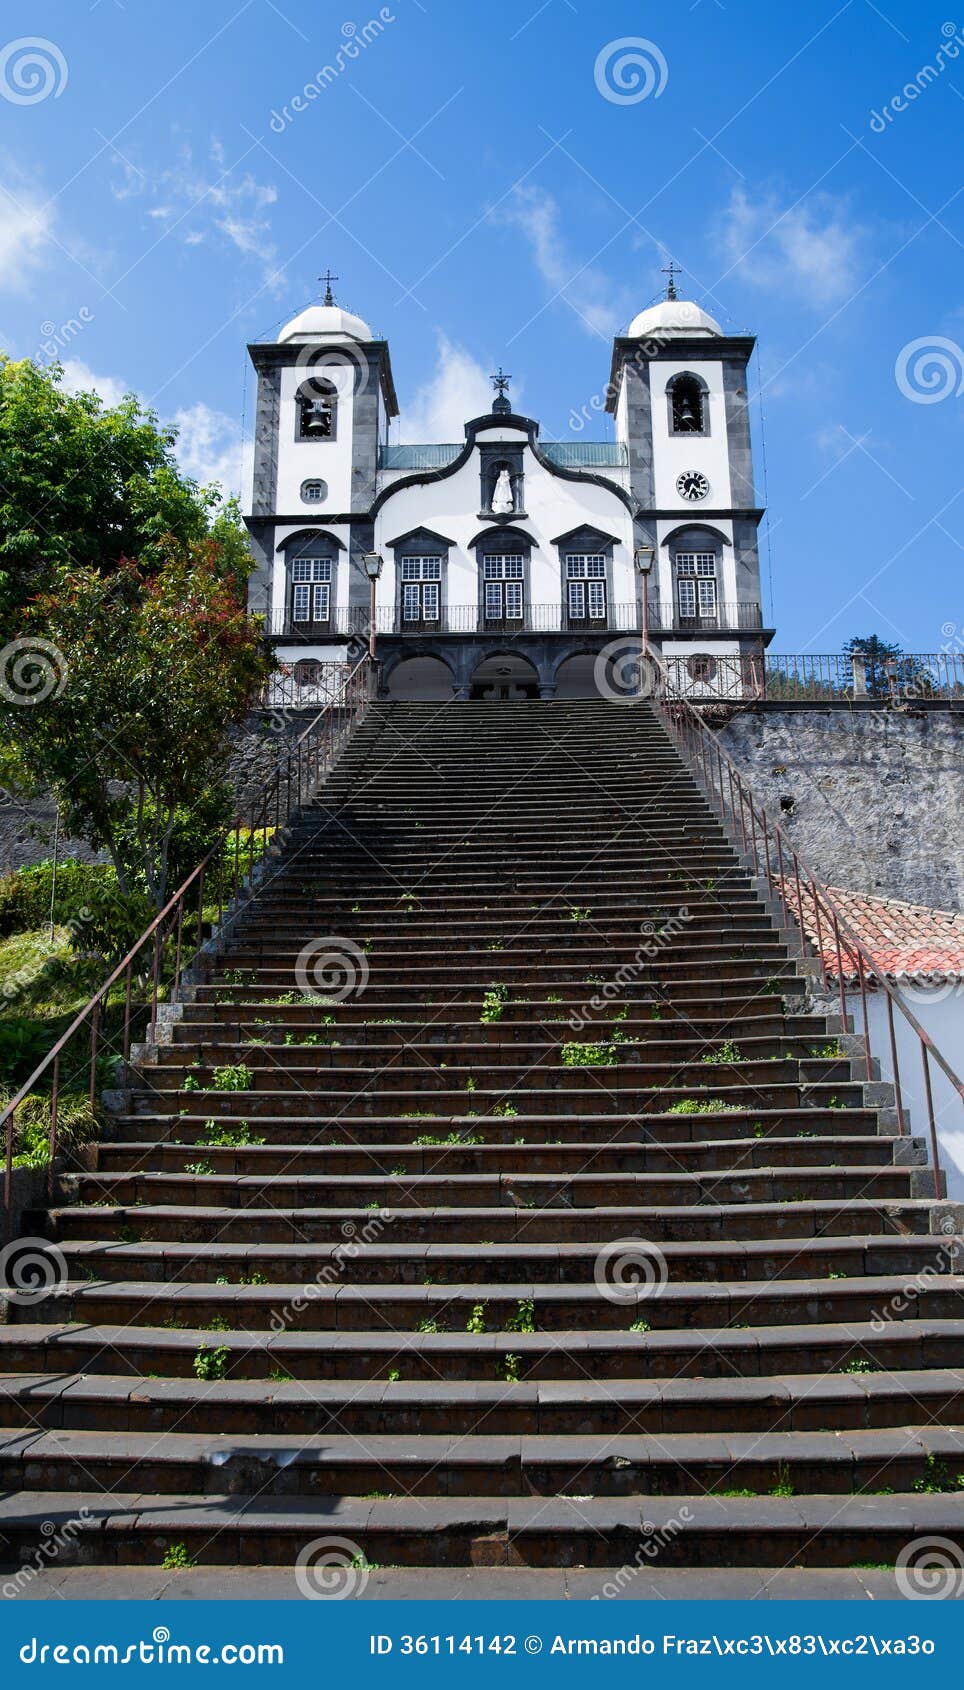 church of nossa senhora do monte, madeira